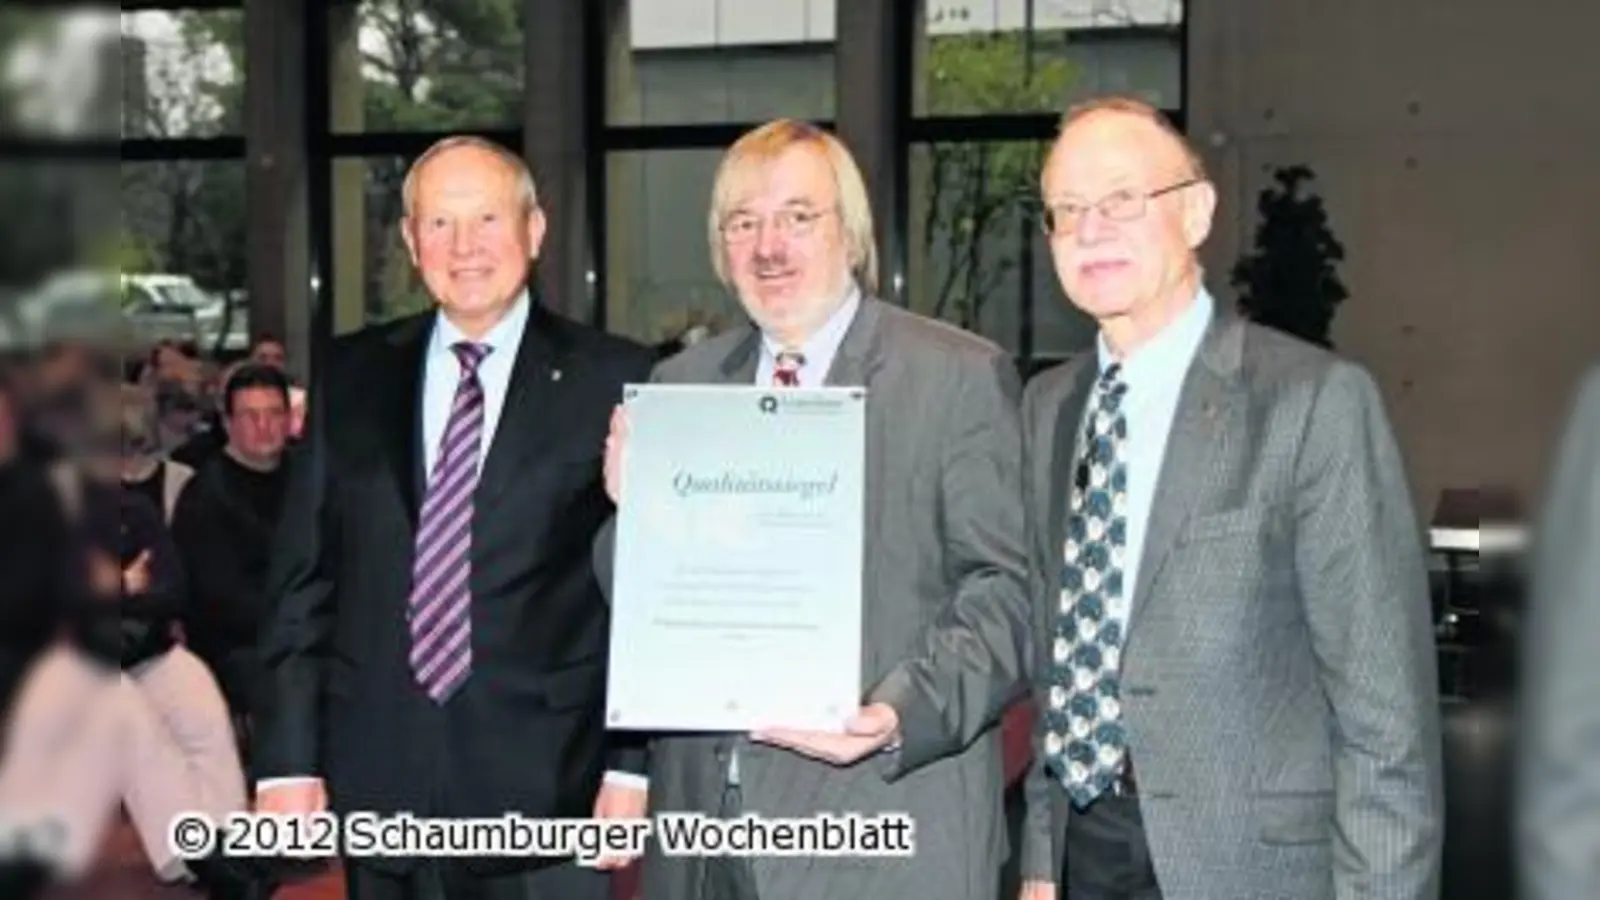 Das Wilhelm-Busch-Gymnasium erhält einen Preis für Präventionsprogramm (Foto: bb)